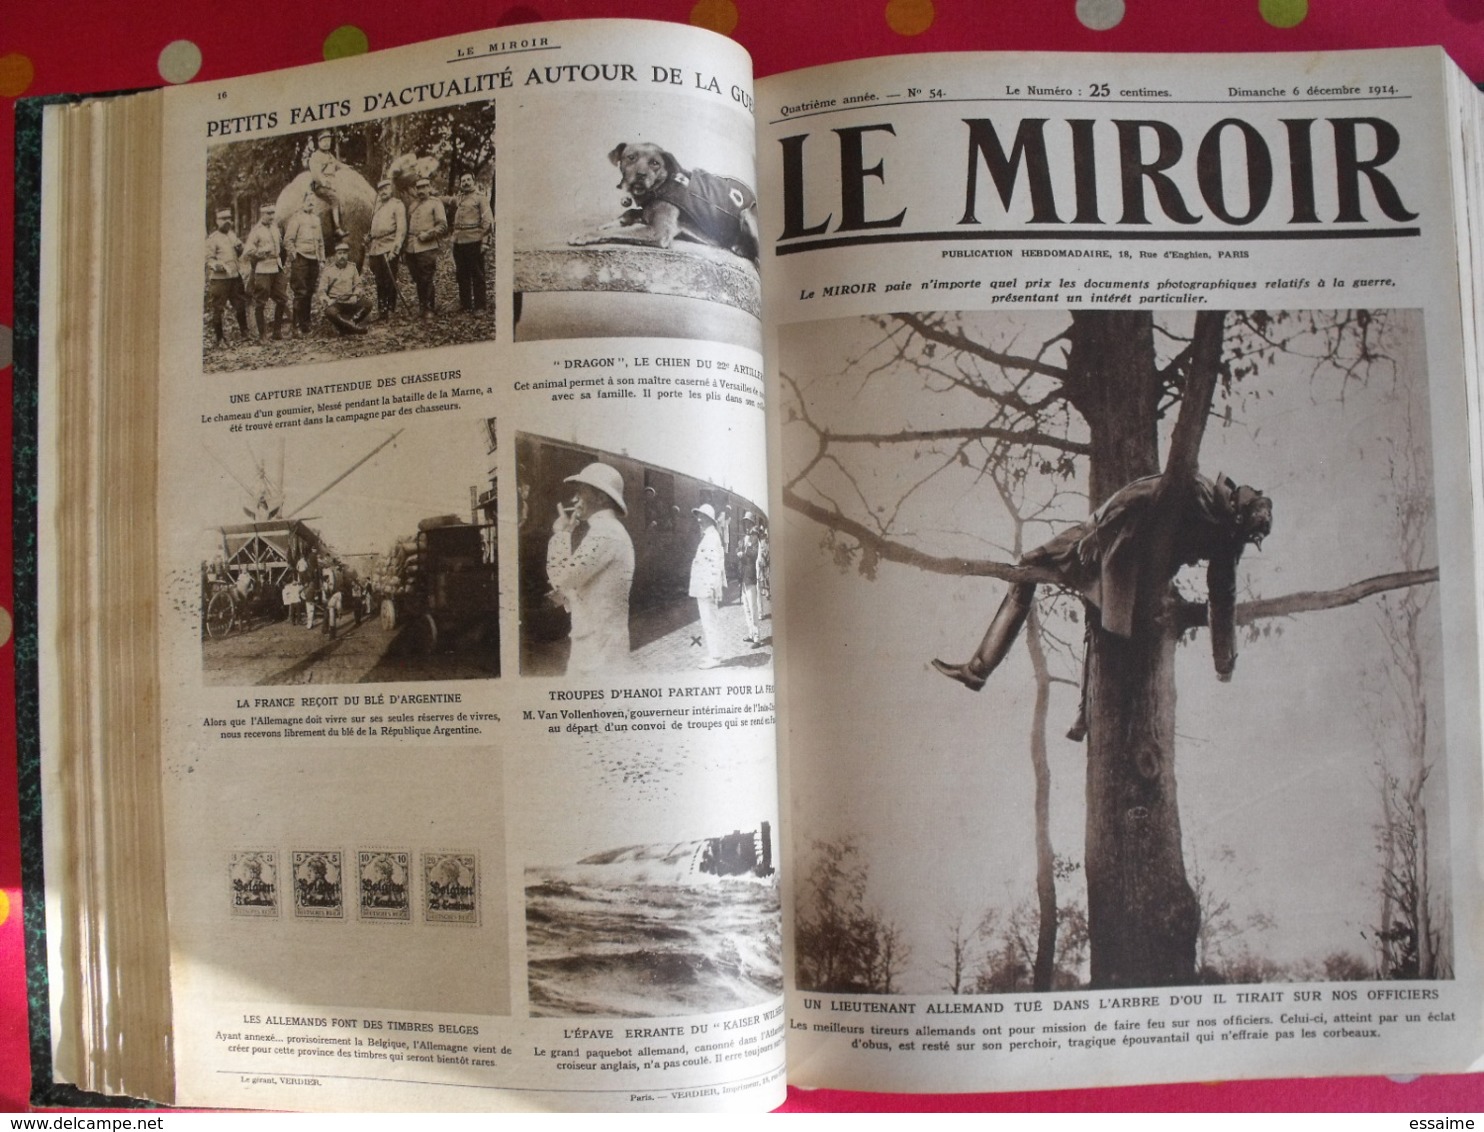 Le miroir. 1914/15. 73 numéros. l'actualité de l'époque très illustrée au début de la guerre. recueil, reliure.